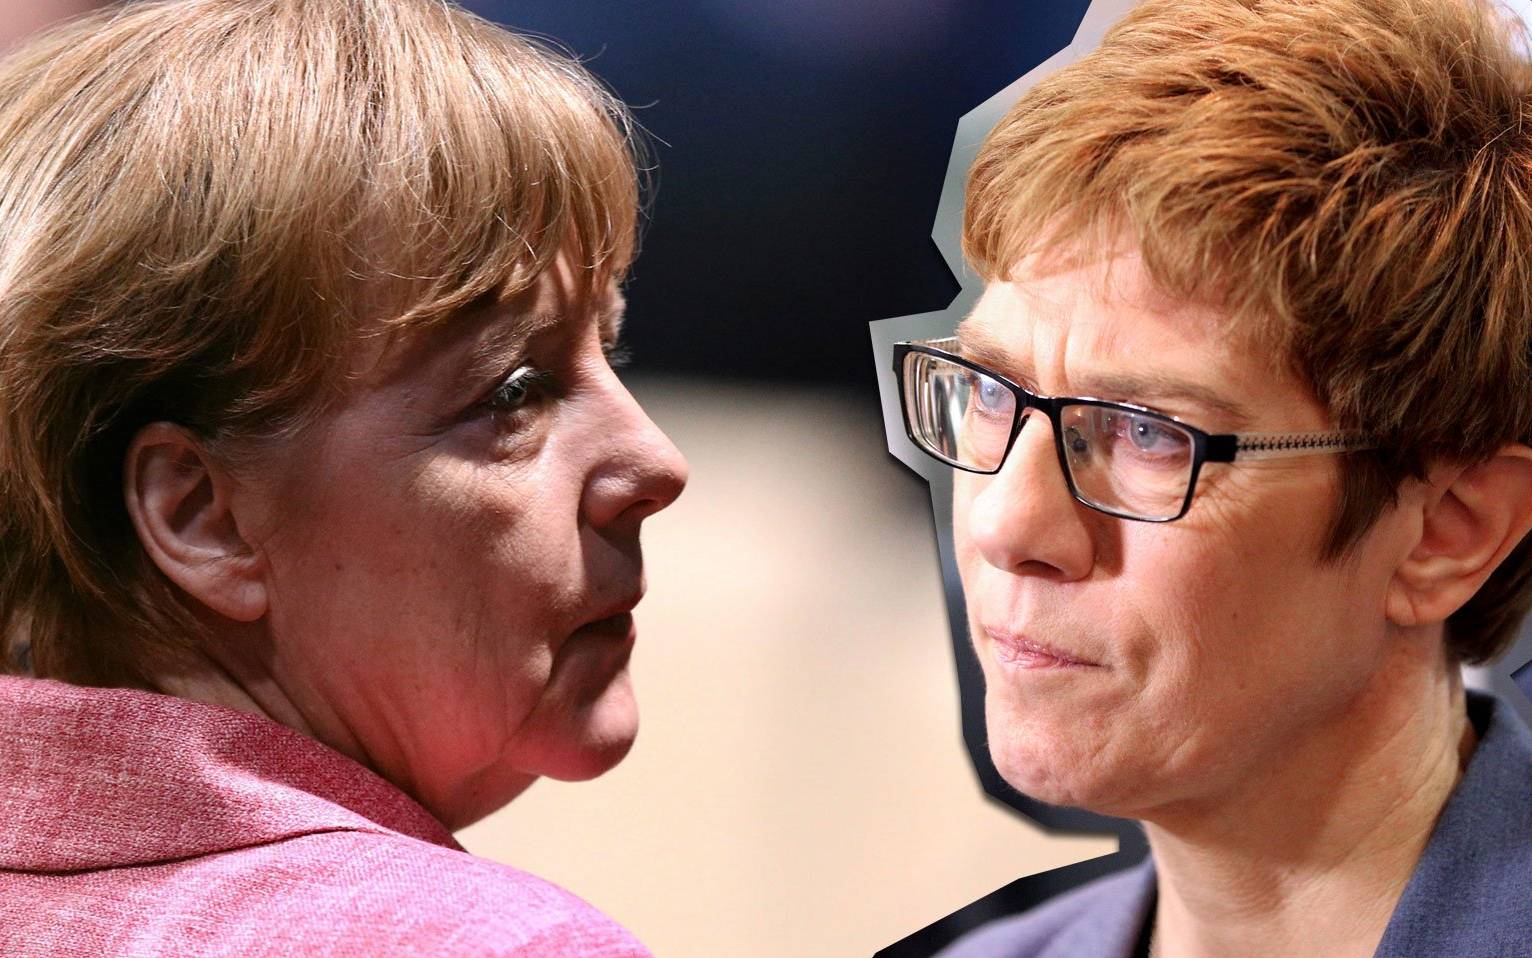 Grafika do artykułu Merkel nie przebiła szklanego sufitu. Szanse kobiet i mężczyzn w Niemczech ciągle nierówne